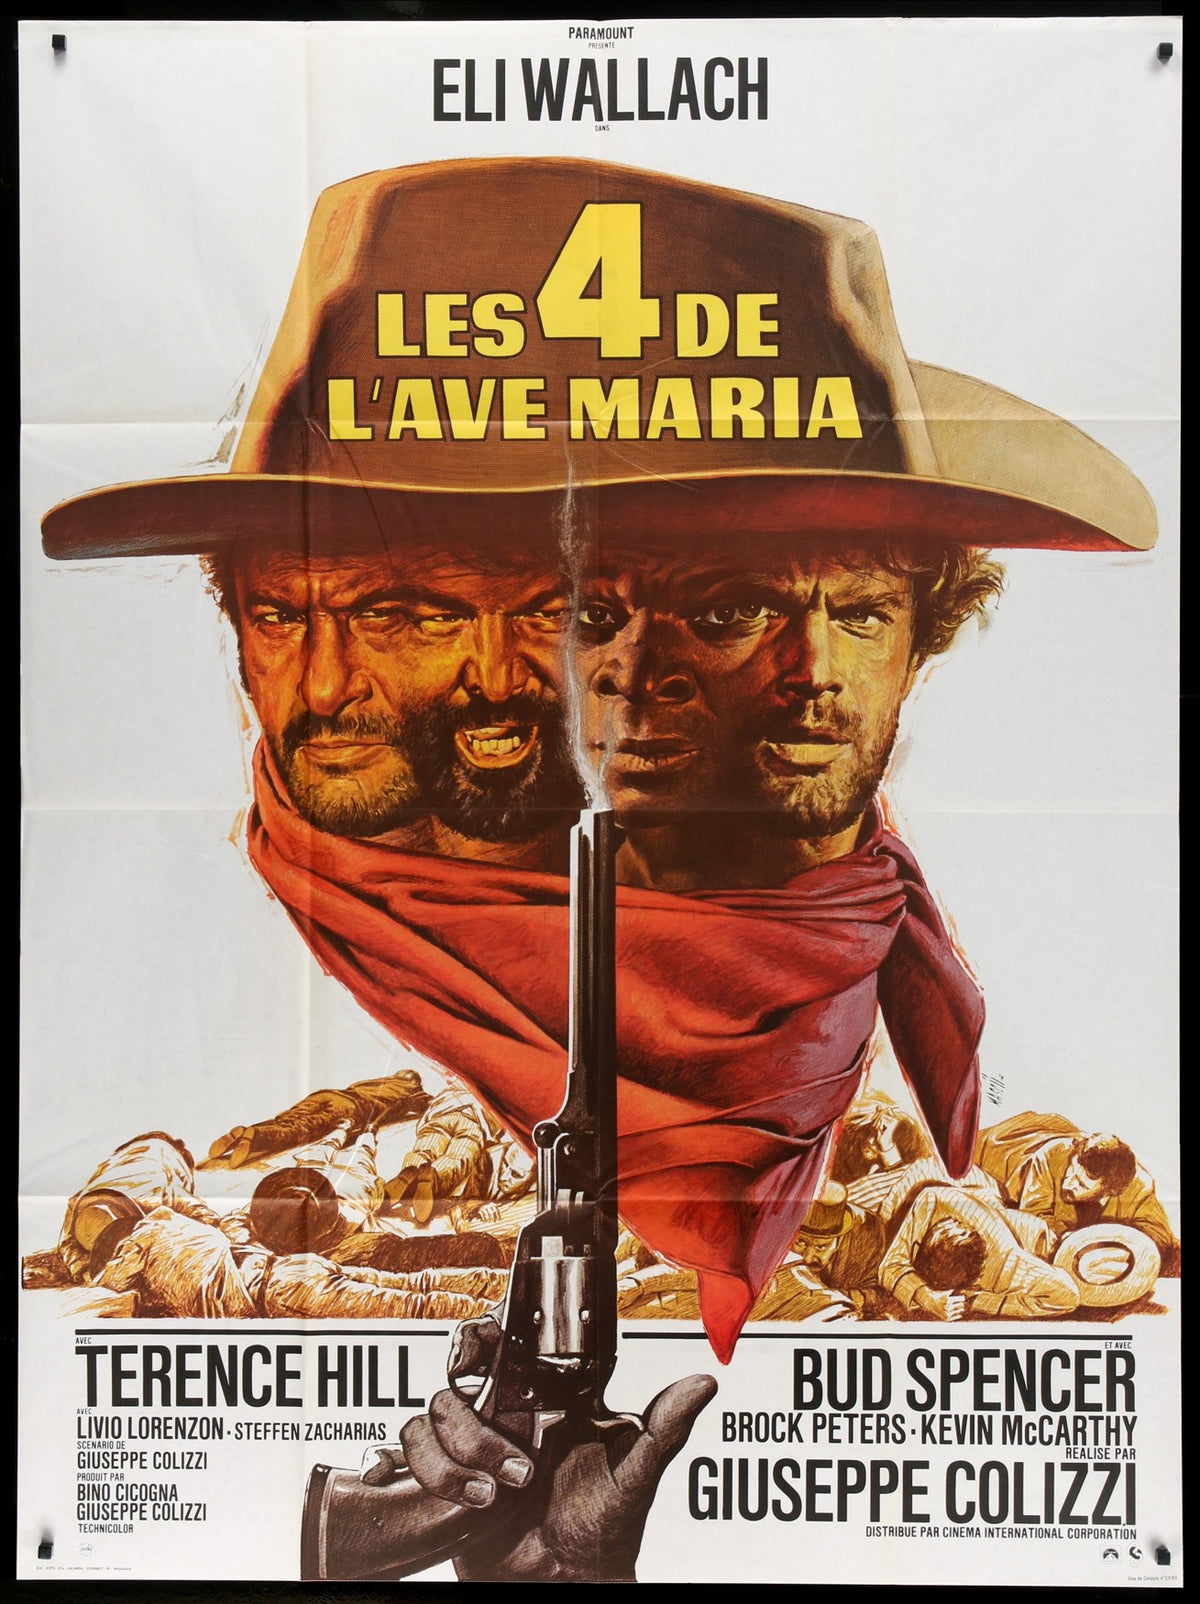 Ace High (1968) original movie poster for sale at Original Film Art